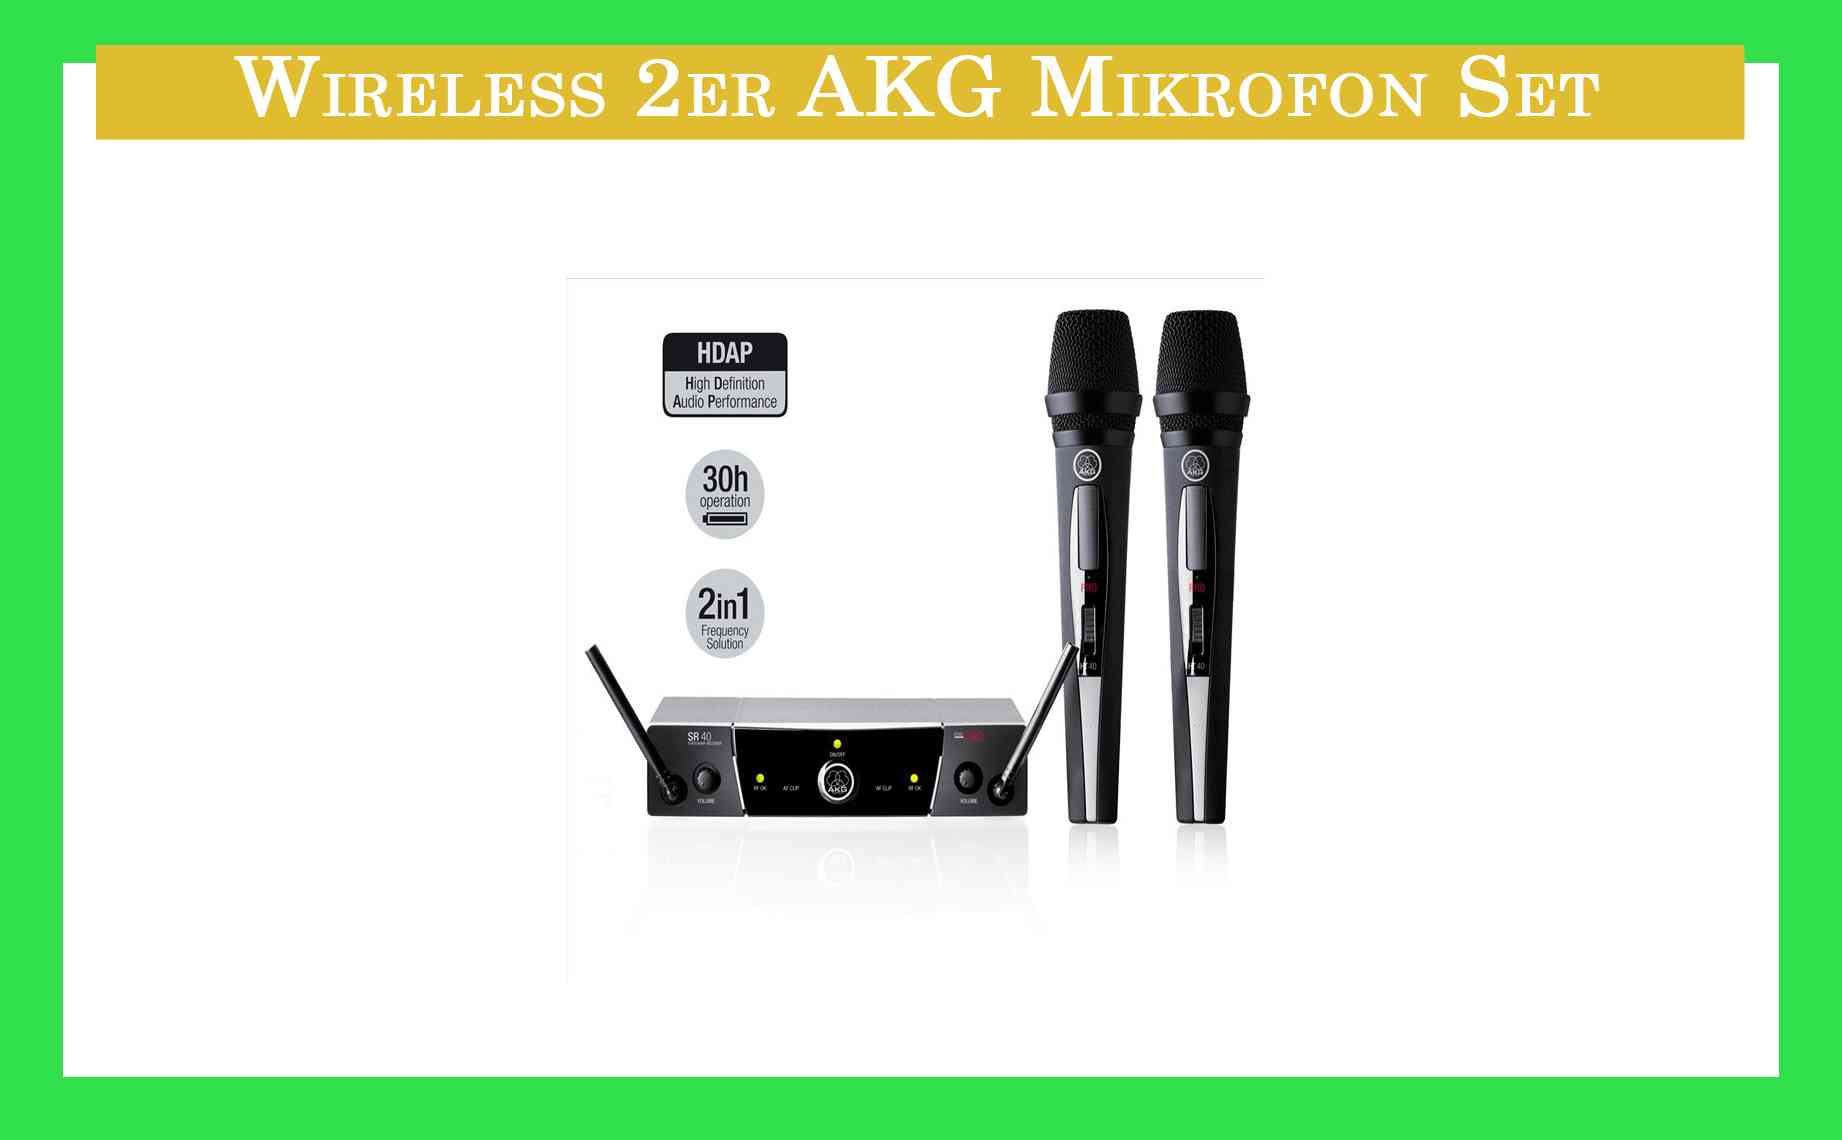 Wireless Mikrofonset 2